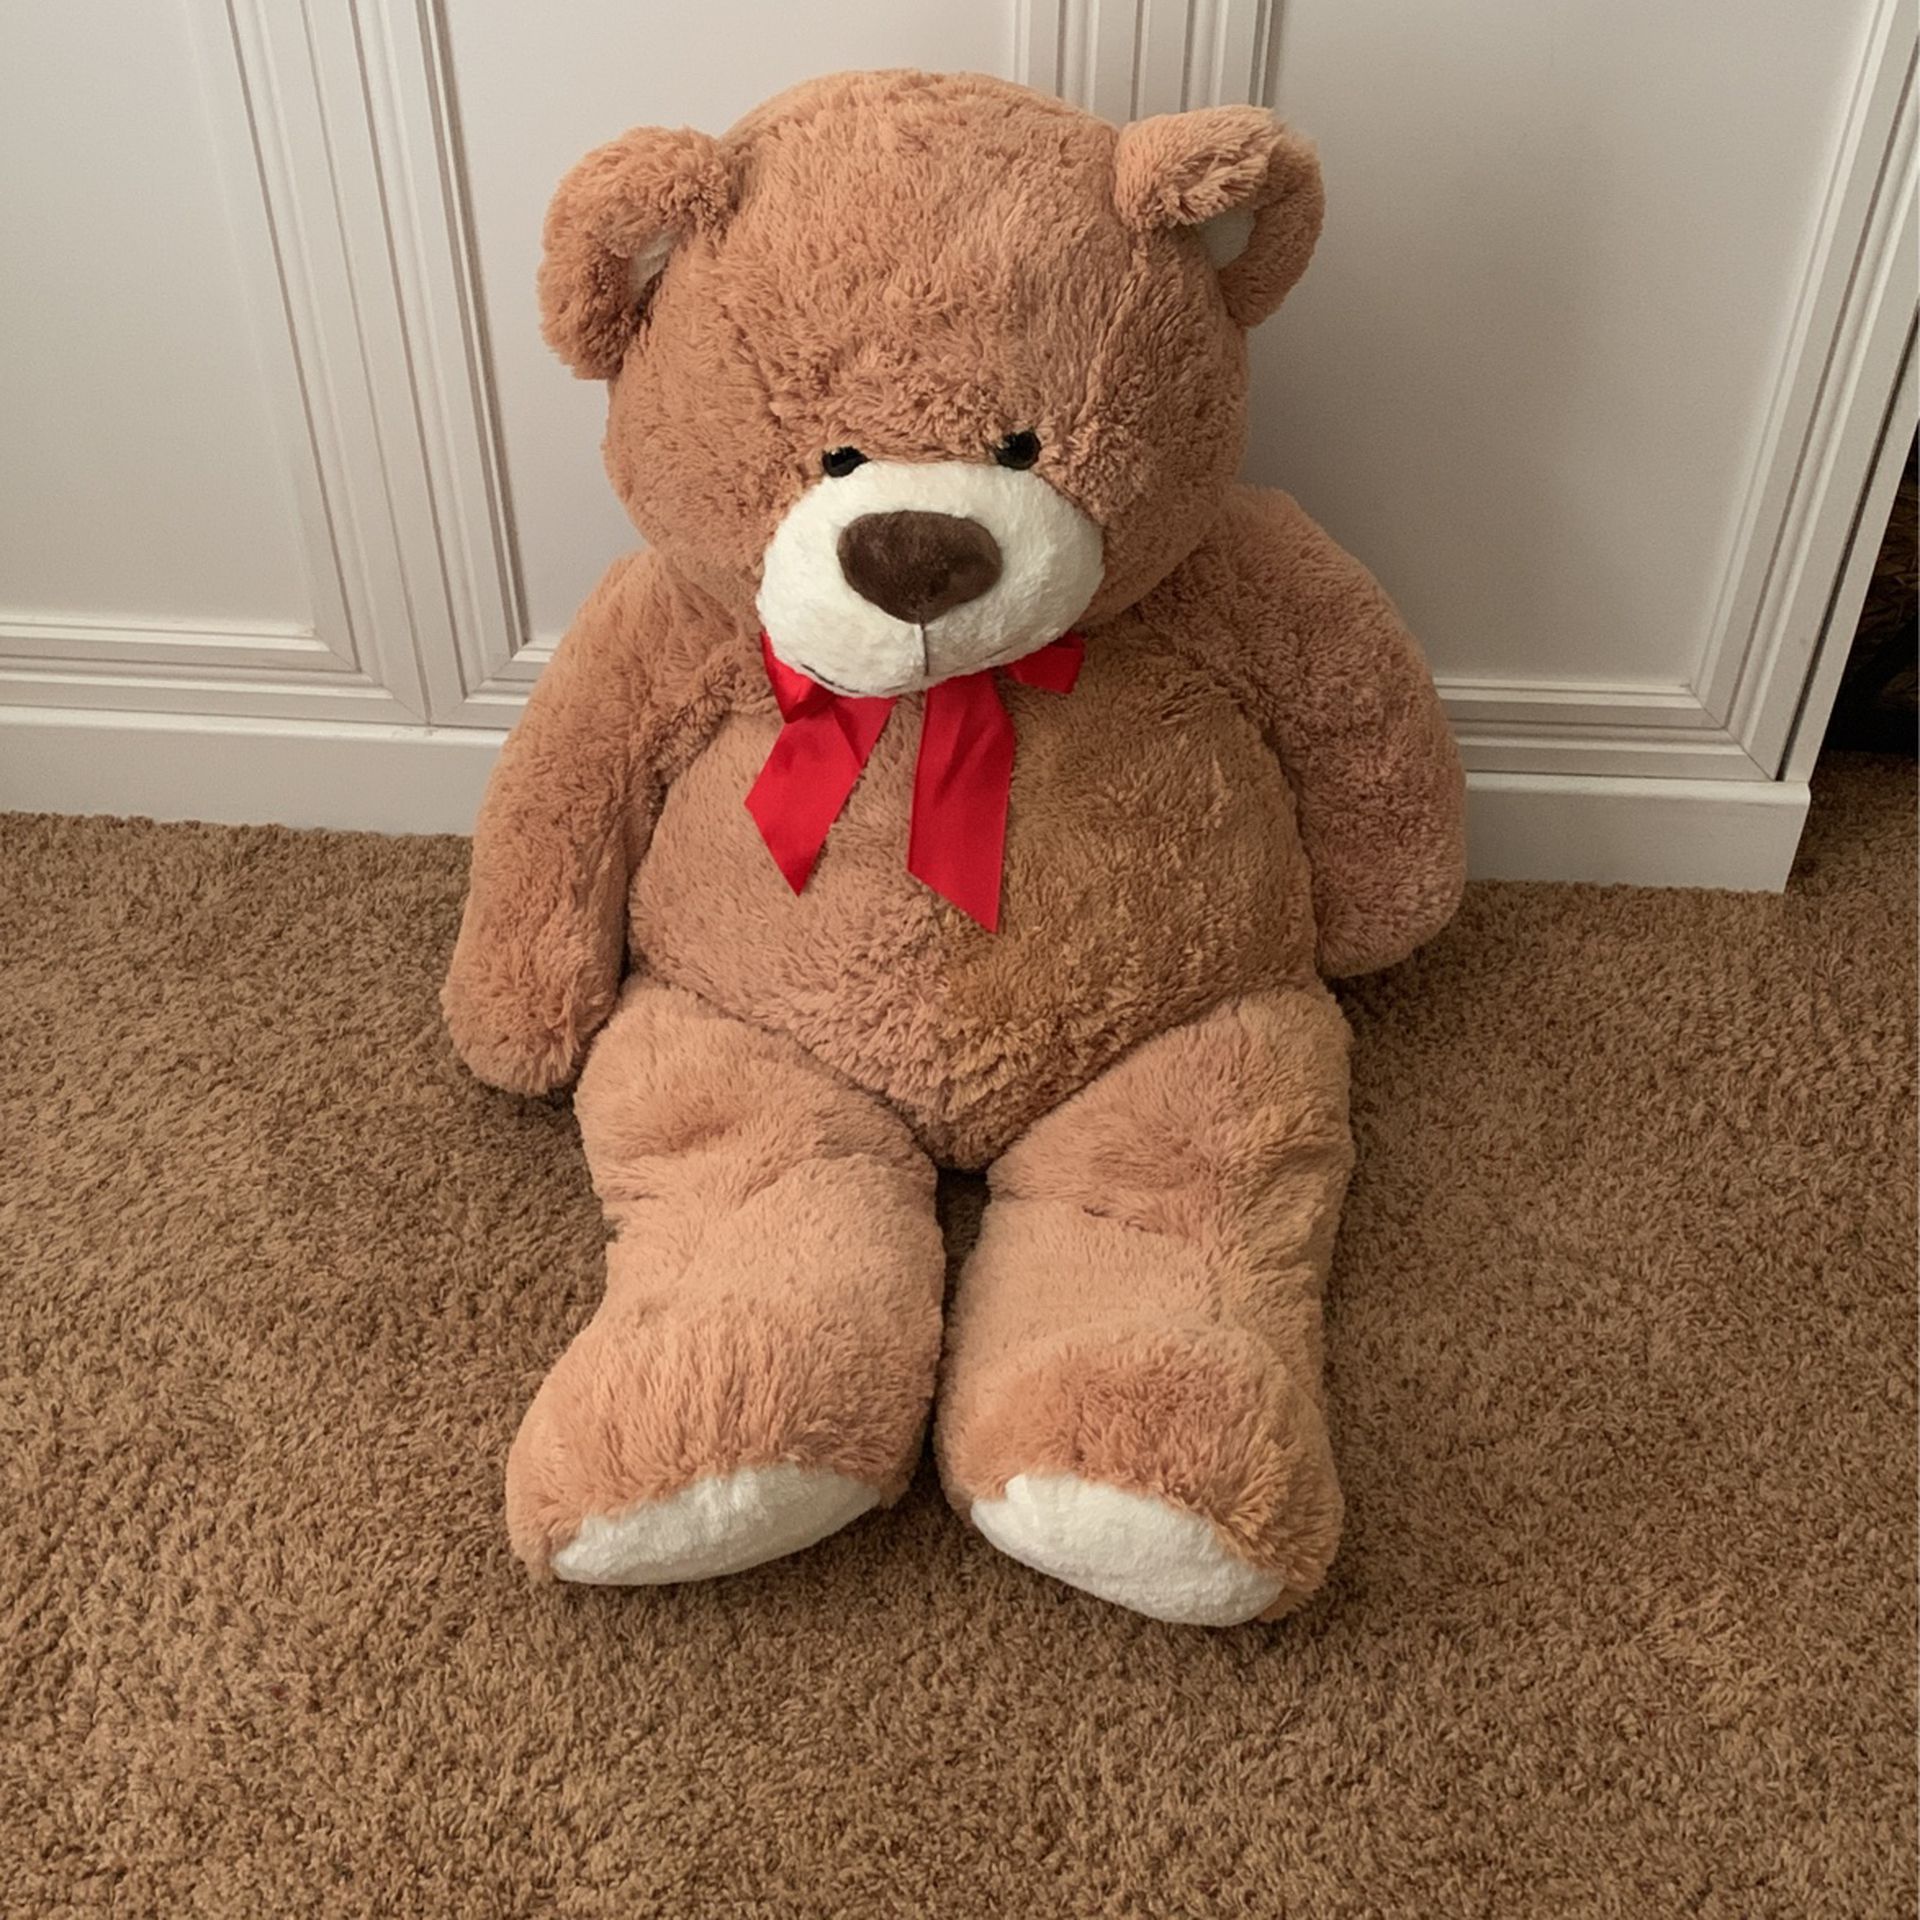 Giant Teddy Bear (approx 4 1/2 Ft)